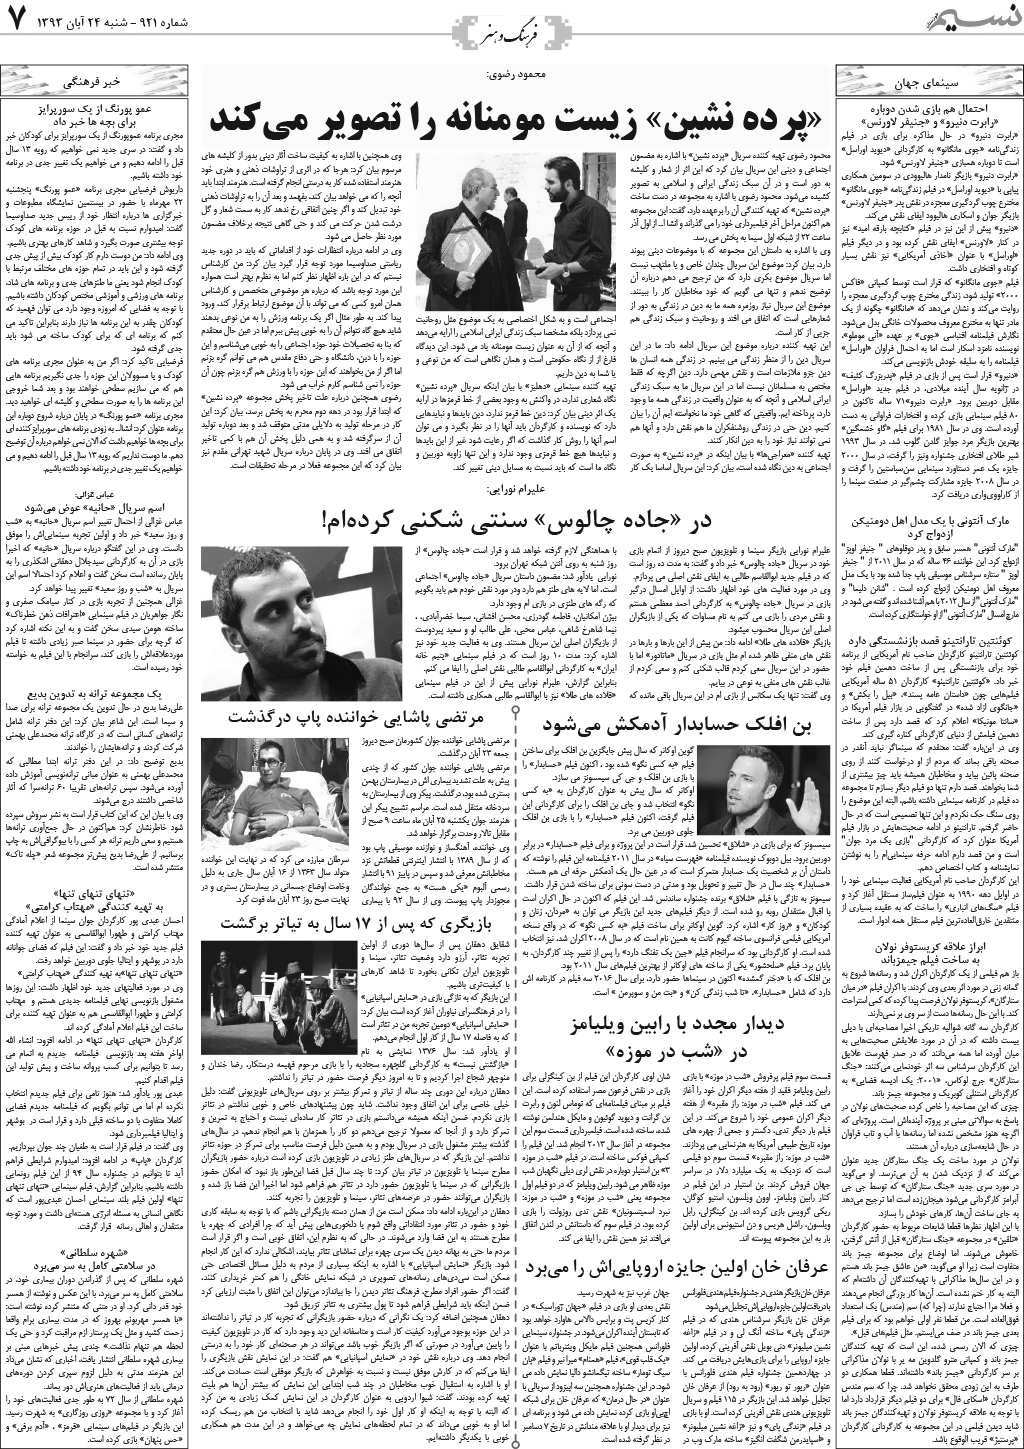 صفحه فرهنگ و هنر روزنامه نسیم شماره 921